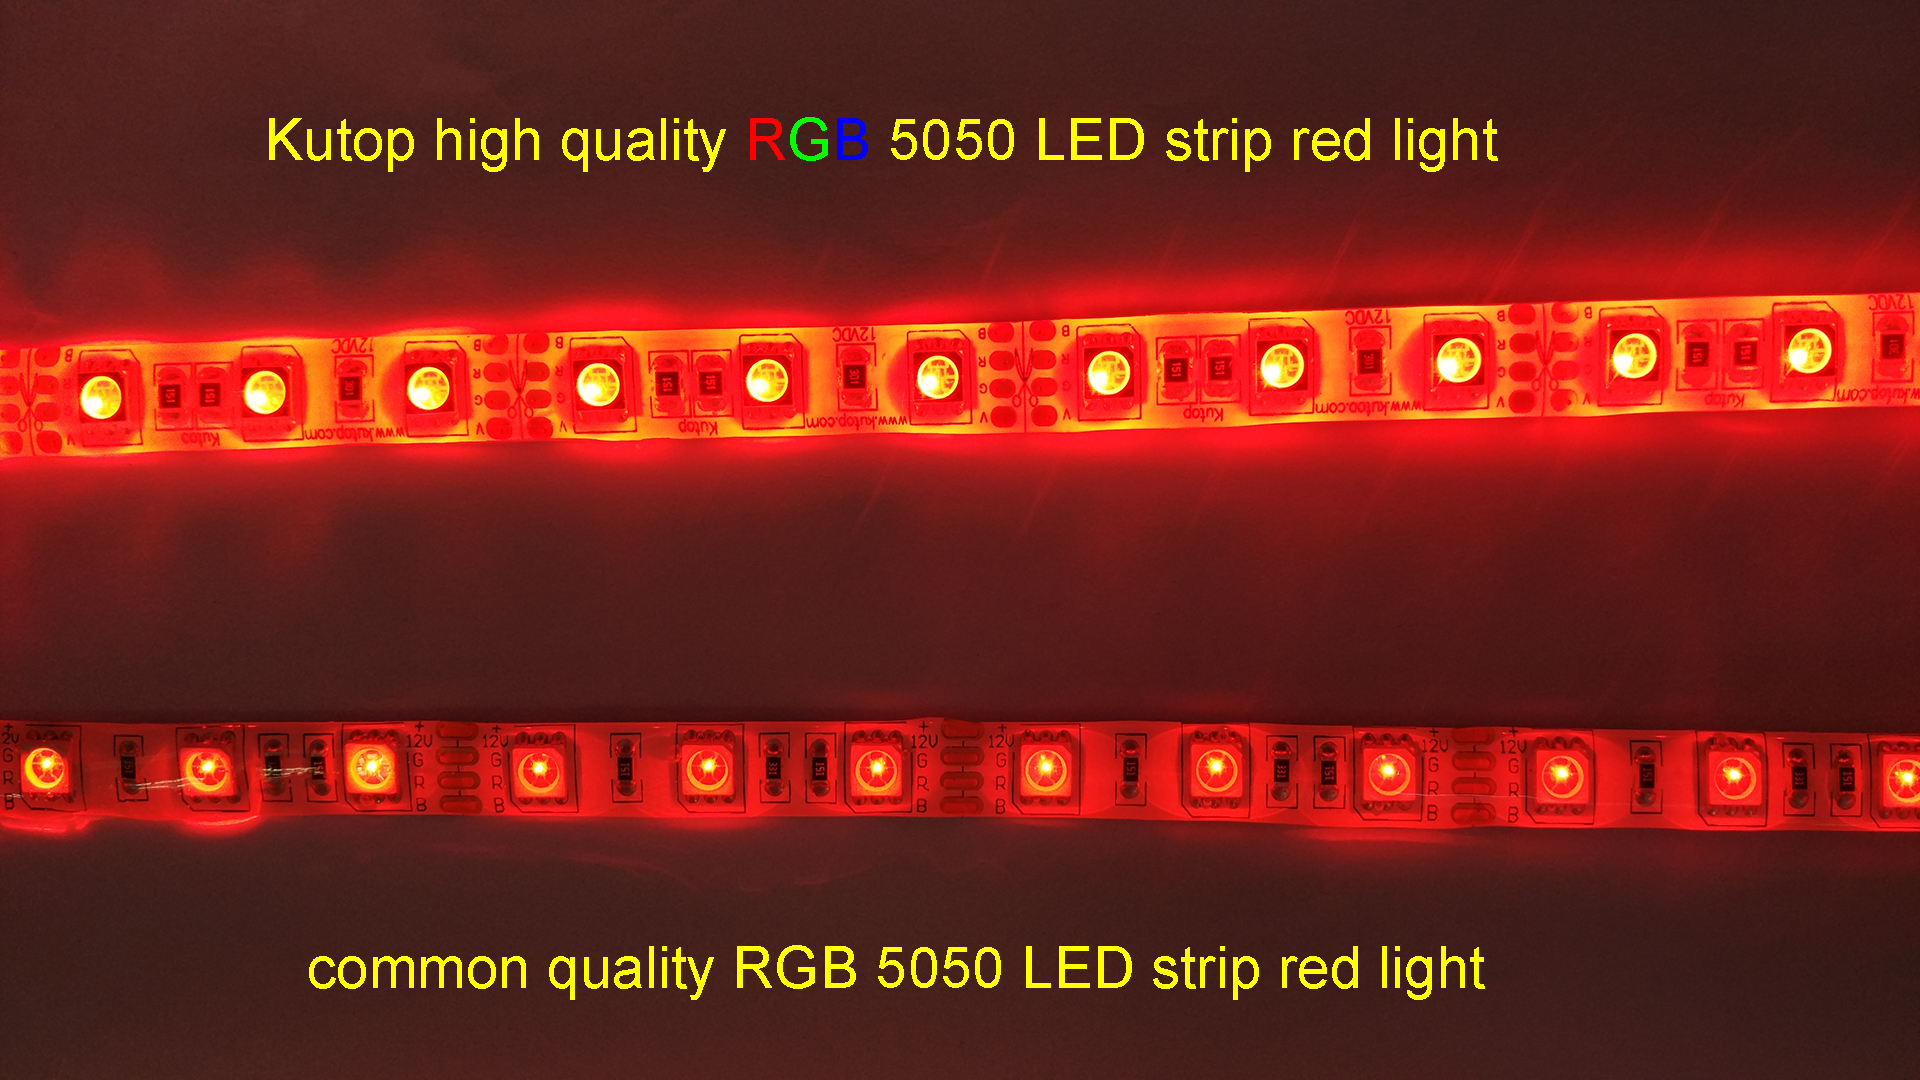 Kutop high quality RGB 5050 LED strip red light